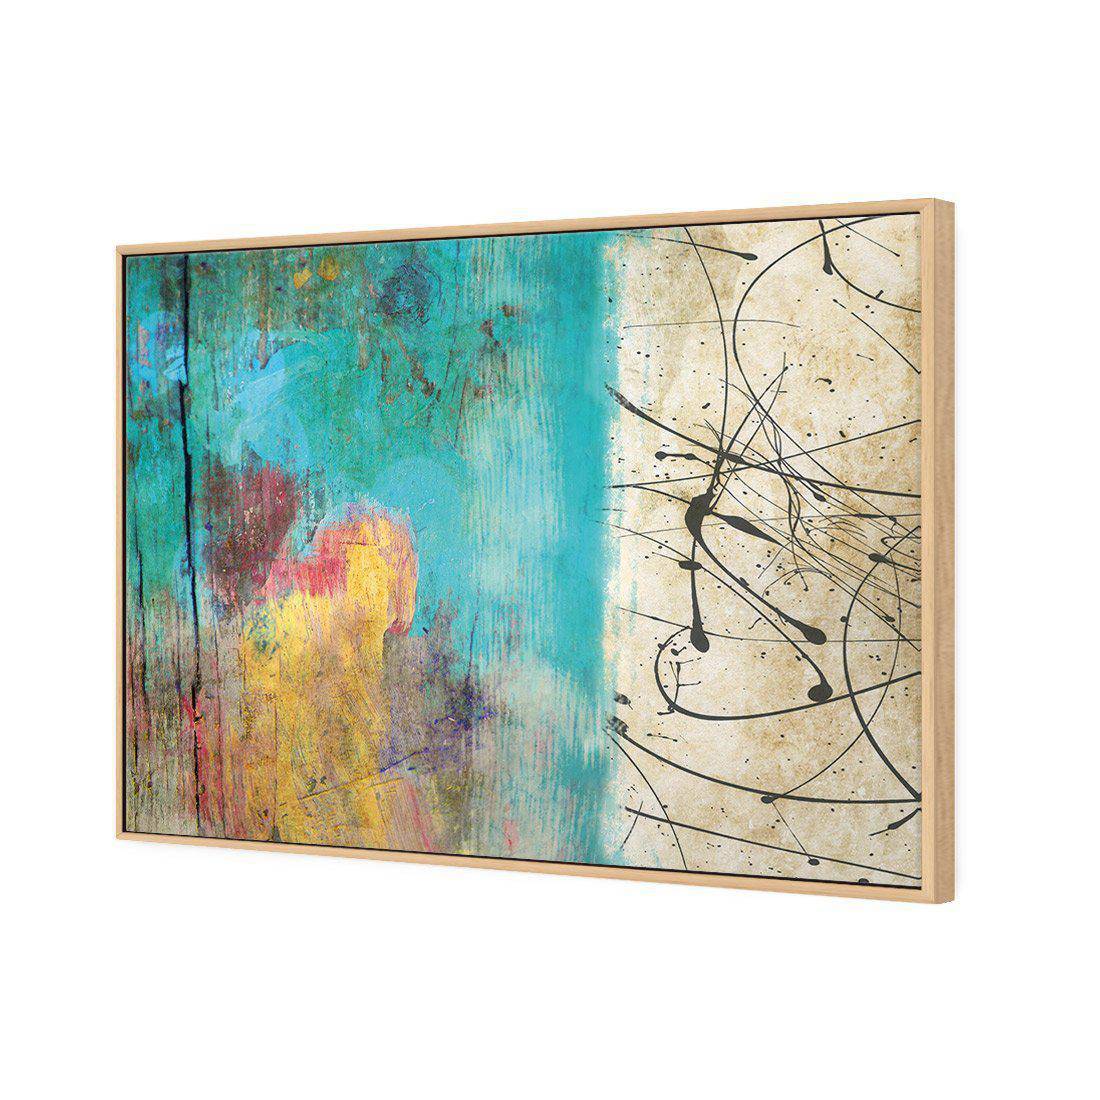 Painted Grunge Splatter Canvas Art-Canvas-Wall Art Designs-45x30cm-Canvas - Oak Frame-Wall Art Designs